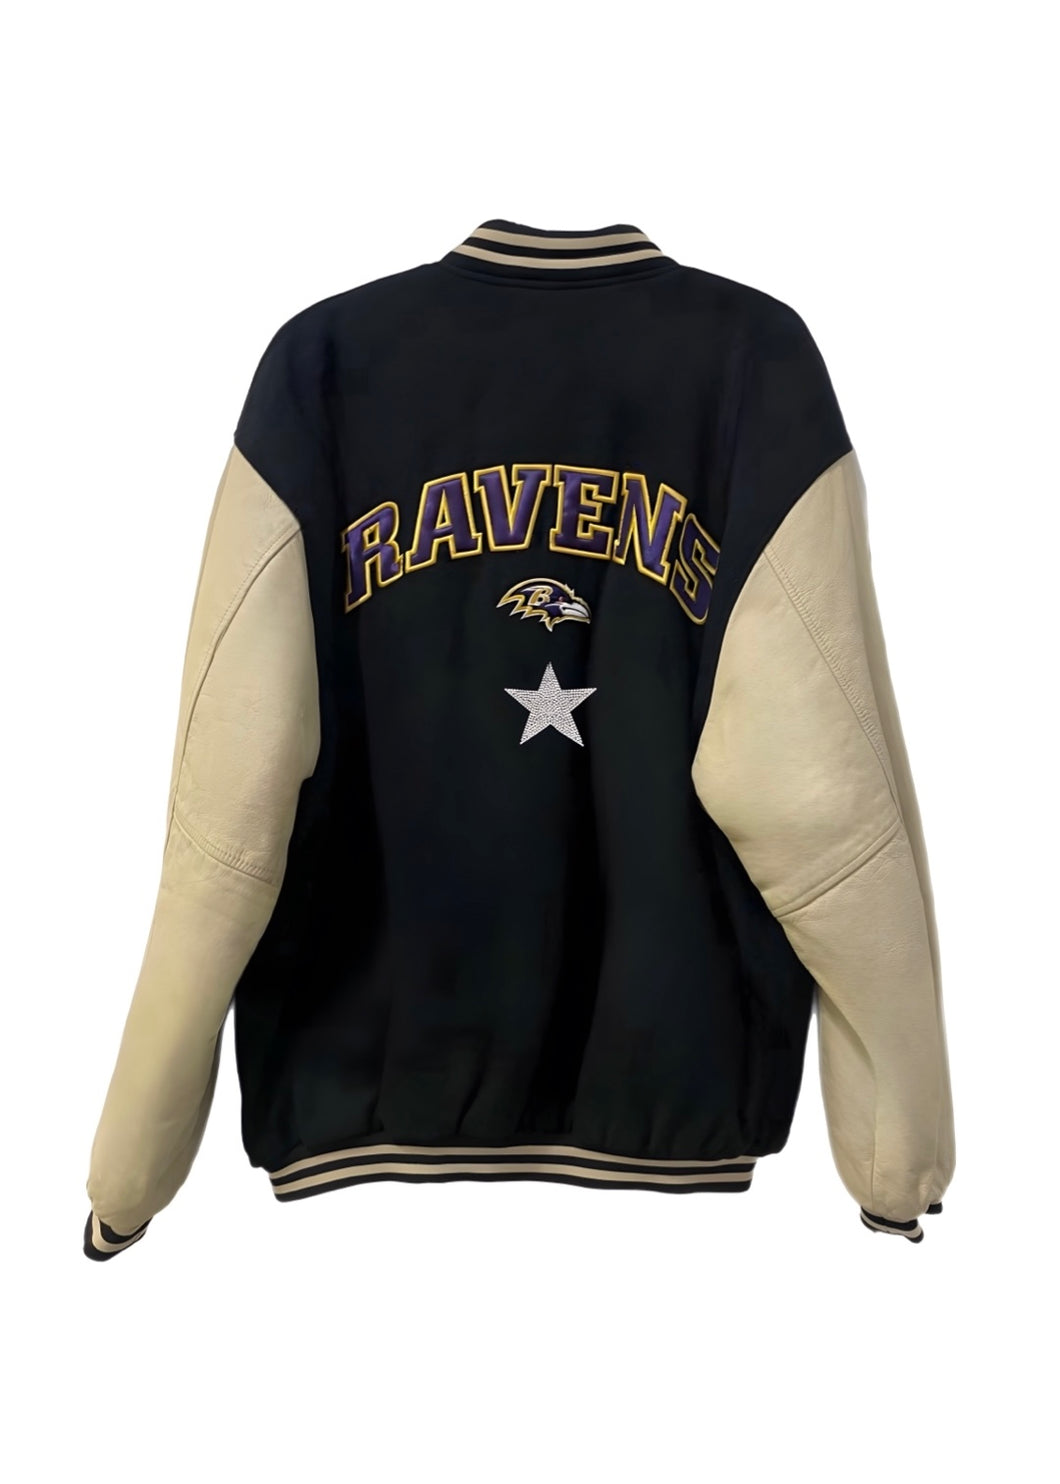 Baltimore Ravens, NFL One of a KIND Vintage “Rare Find” Varsity Jacket with Crystal Star Design